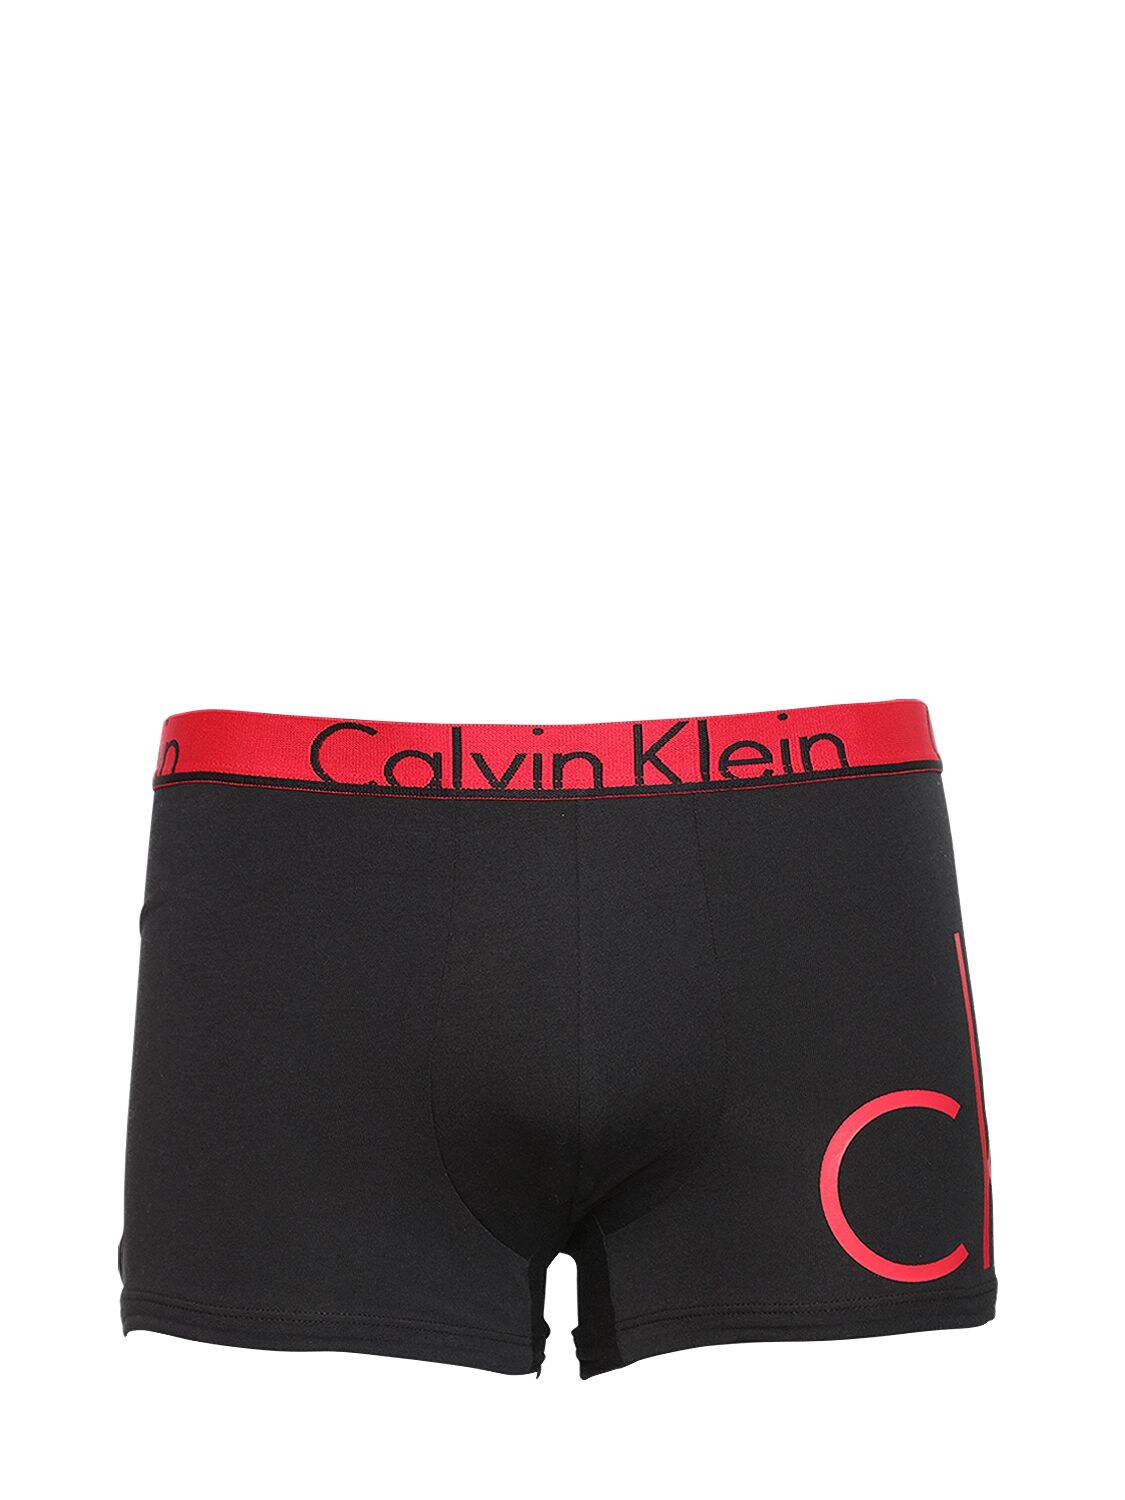 Calvin Klein Underwear Logo Stretch Cotton Boxer Briefs In Black/red